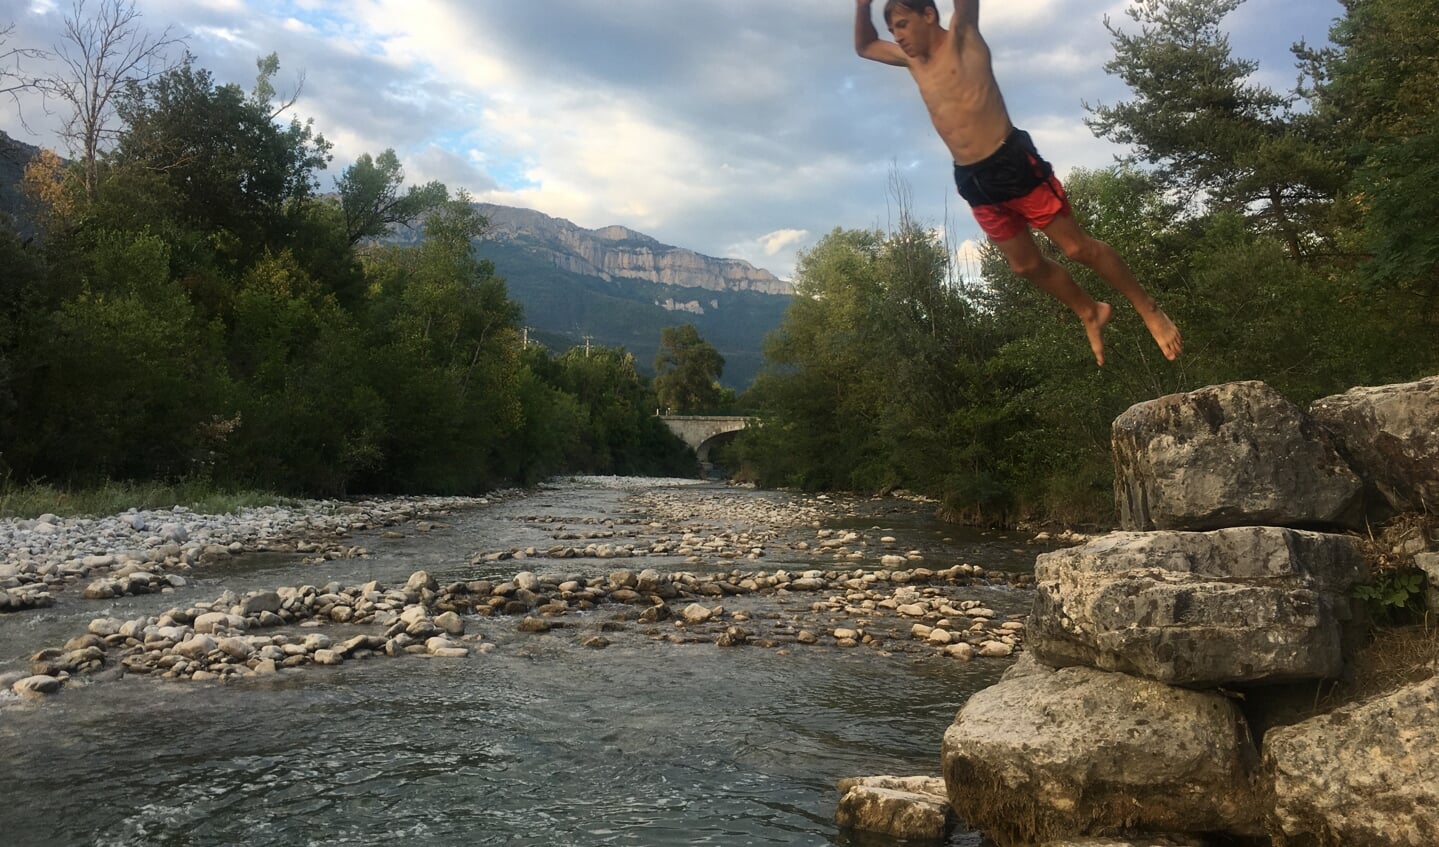 Wij zijn net terug van onze vakantie in Frankrijk aan de rivier de Drôme. Door de droogte stroomde er weinig water in deze rivier maar we vonden toch nog een plekje waar het wat dieper was zodat onze zoons er lekker in konden springen.